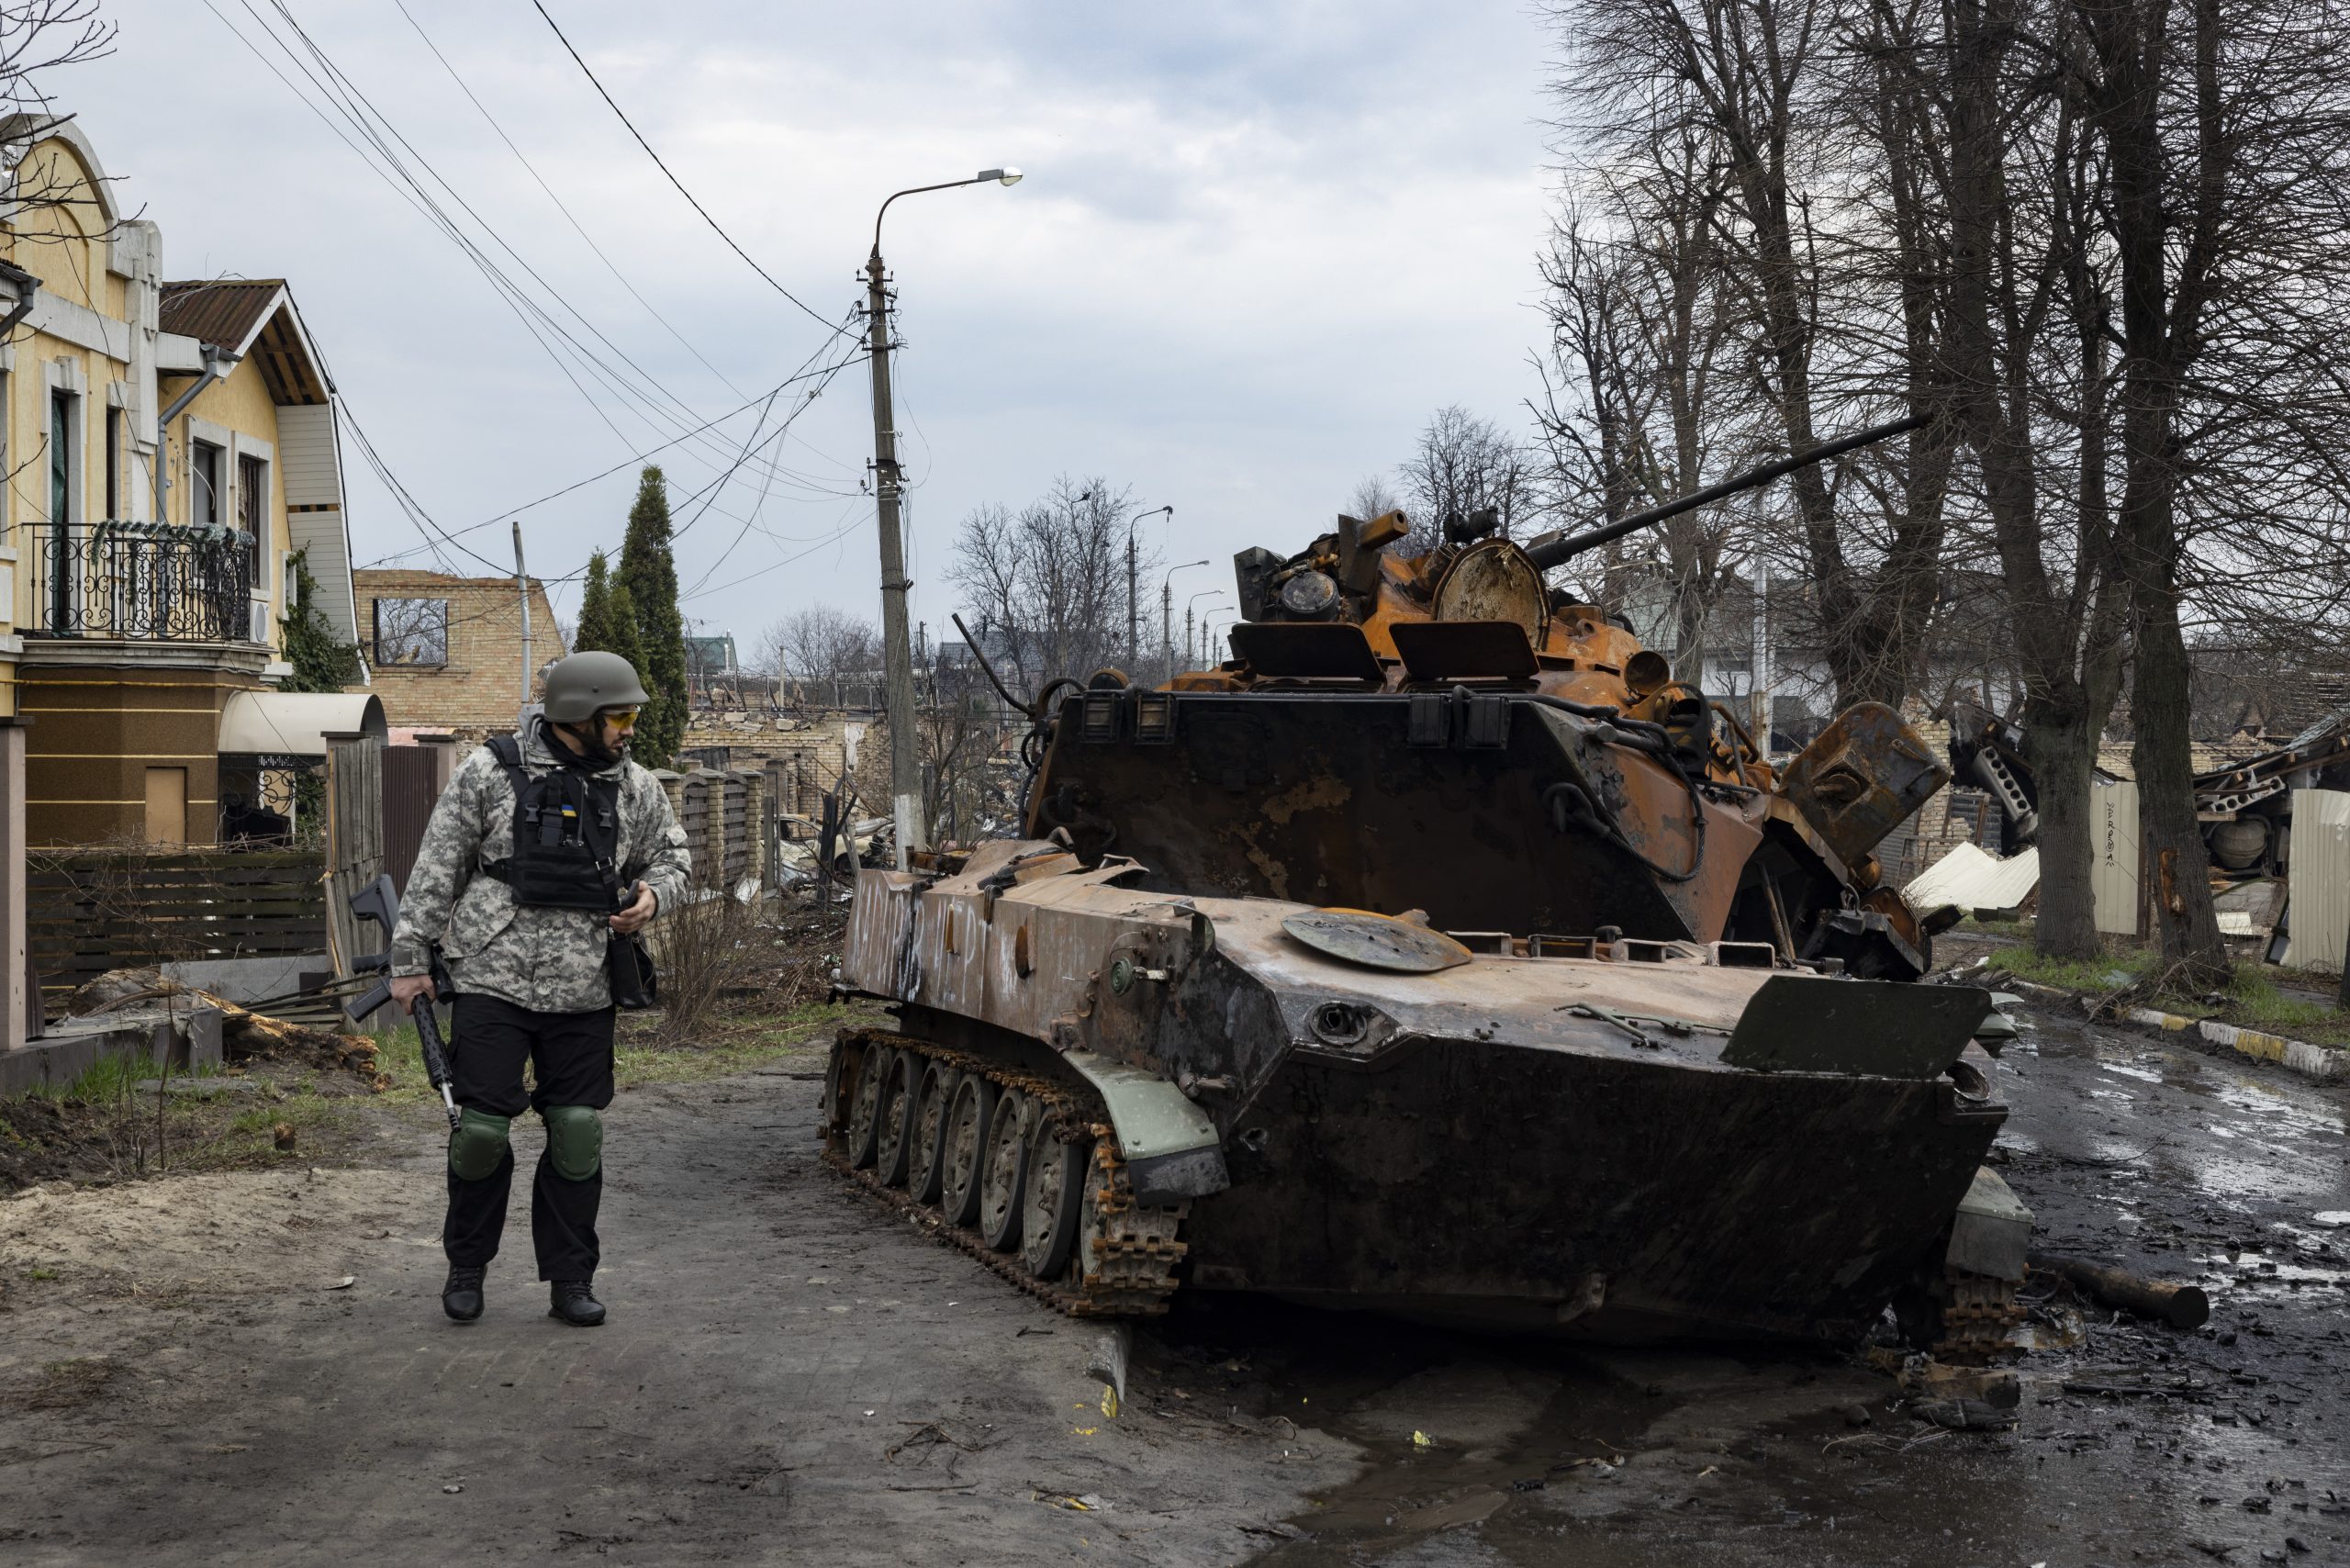 Un tank détruit dans un rue de Boutcha en Ukraine. Un militaire à gauche du tank éventré l'observe.